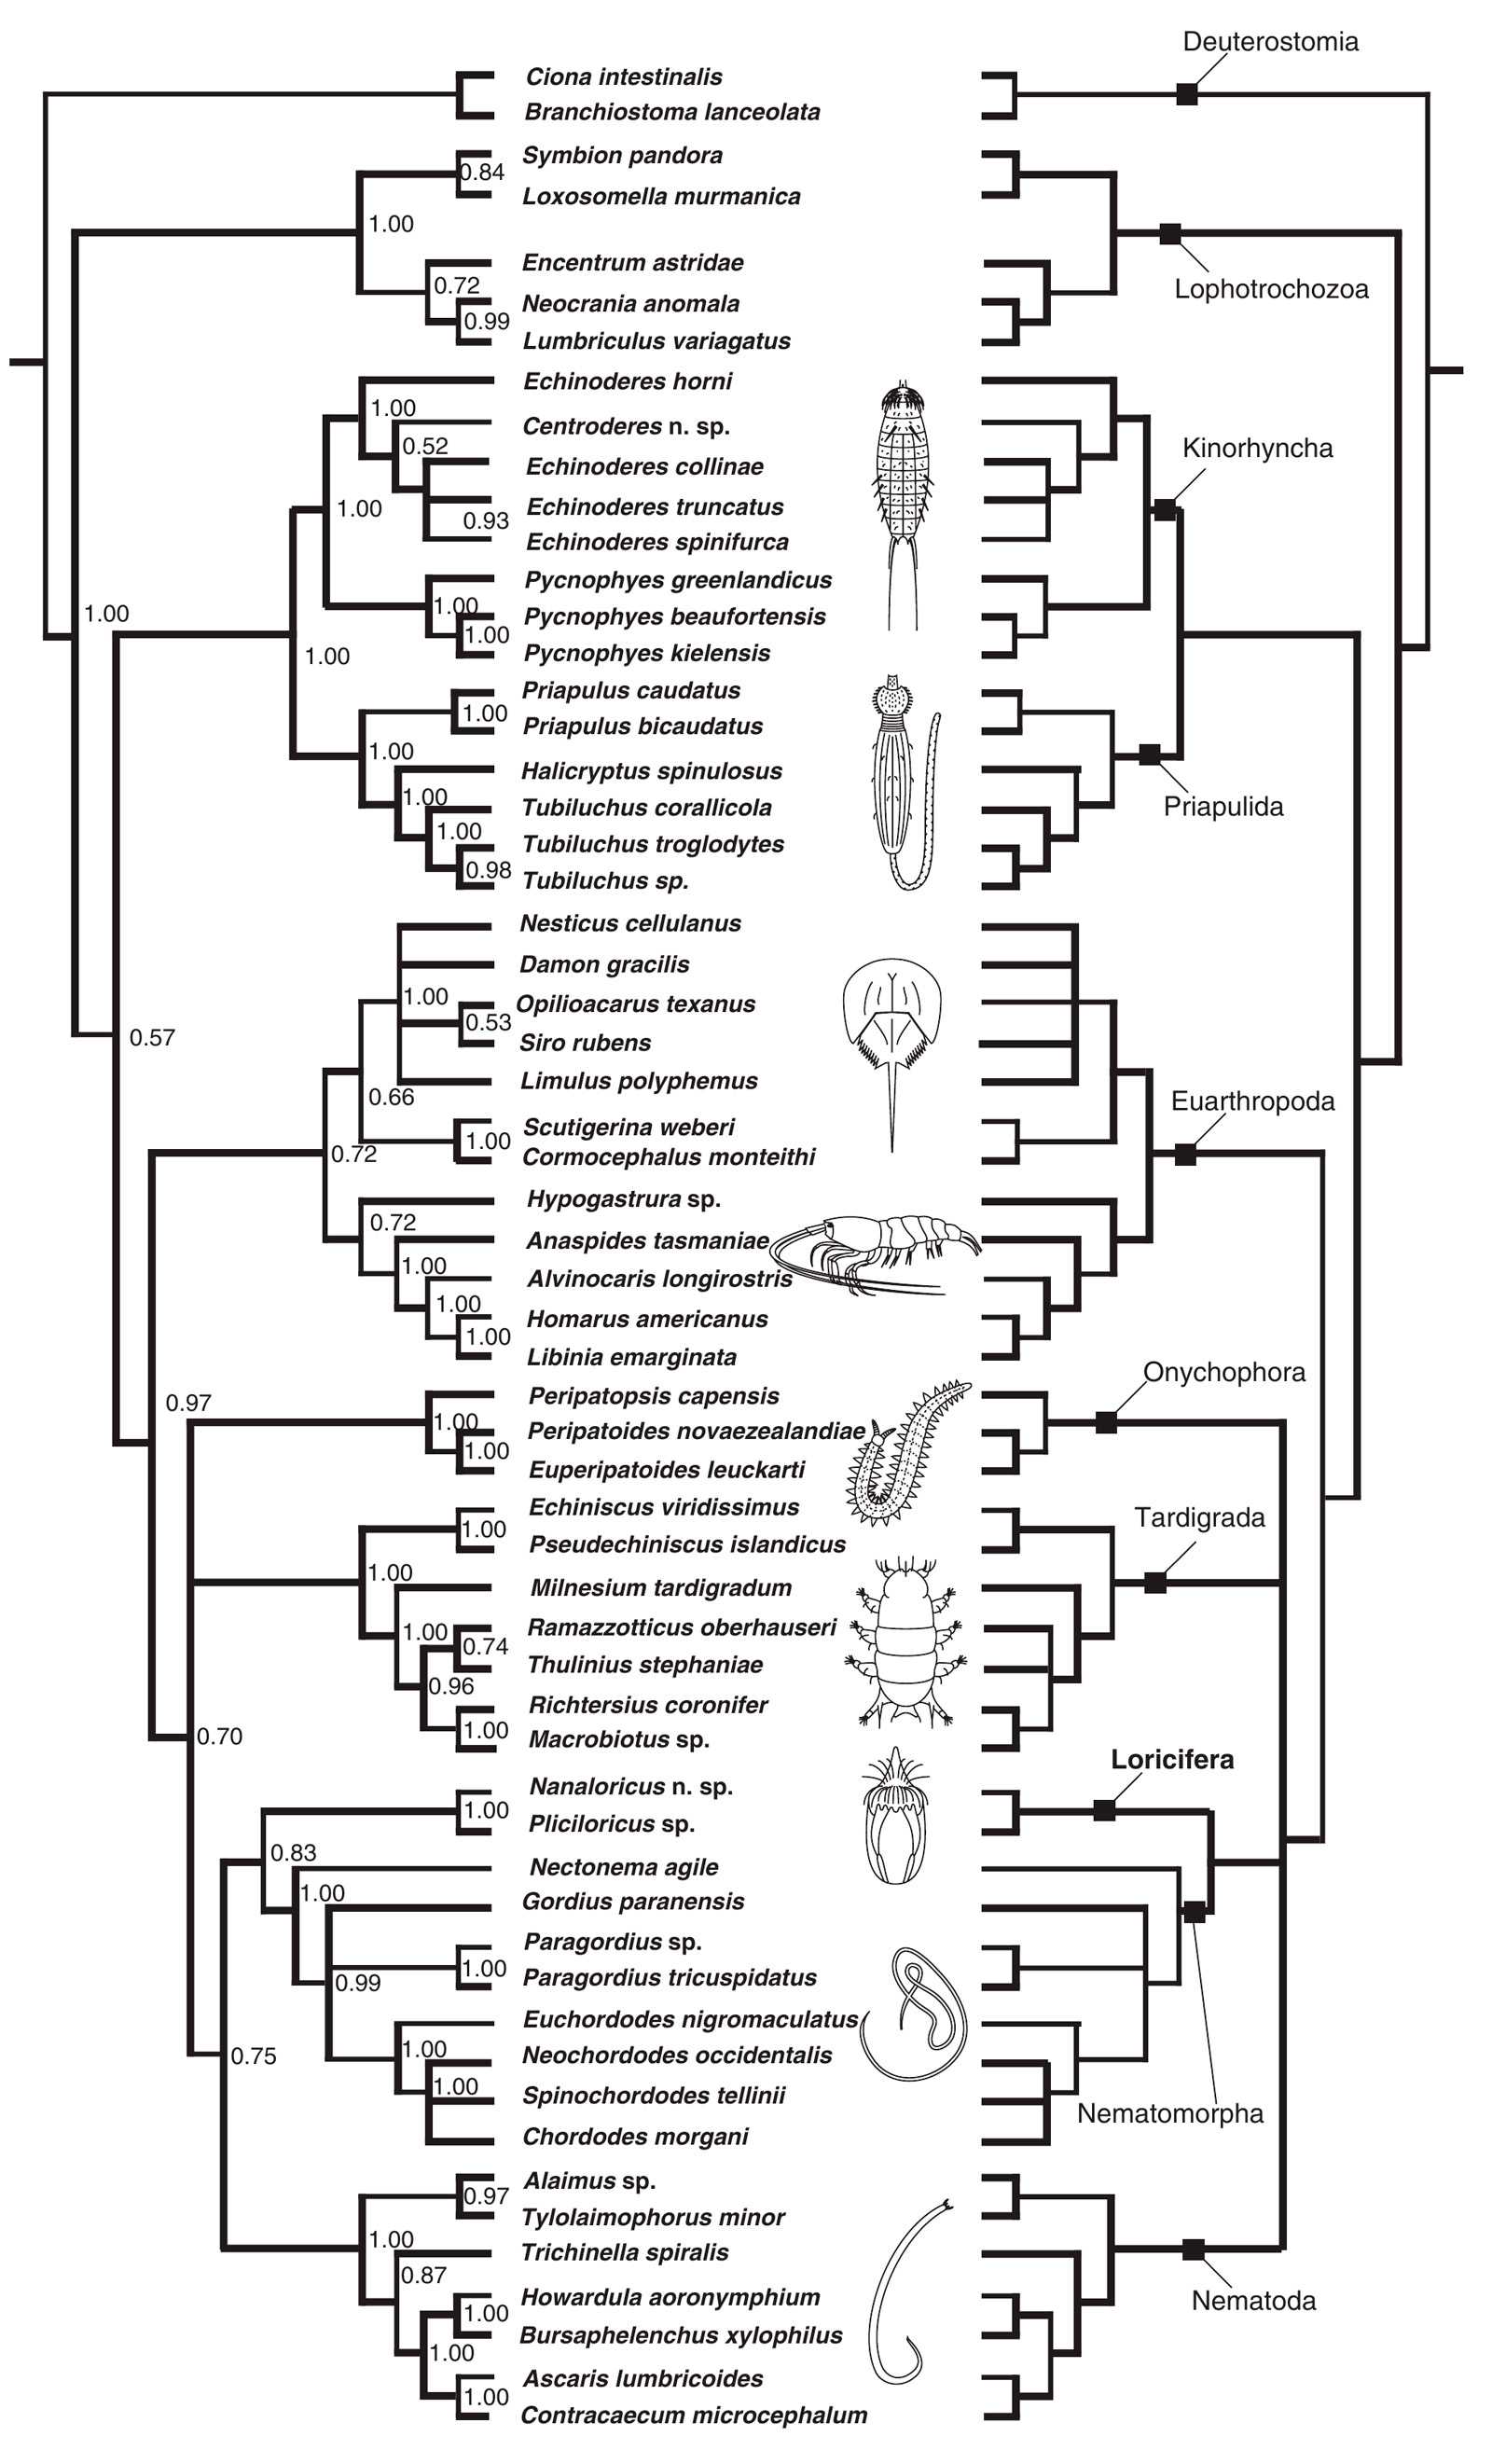 Лорициферы — тип морских червей, открытый только в 1983 году и входящий в группу линяющих животных Ecdysozoa, к которой относятся членистоногие с их червеобразными родственниками Последние делятся на две группы — Scalidophora и Nematoida Новое исследовани